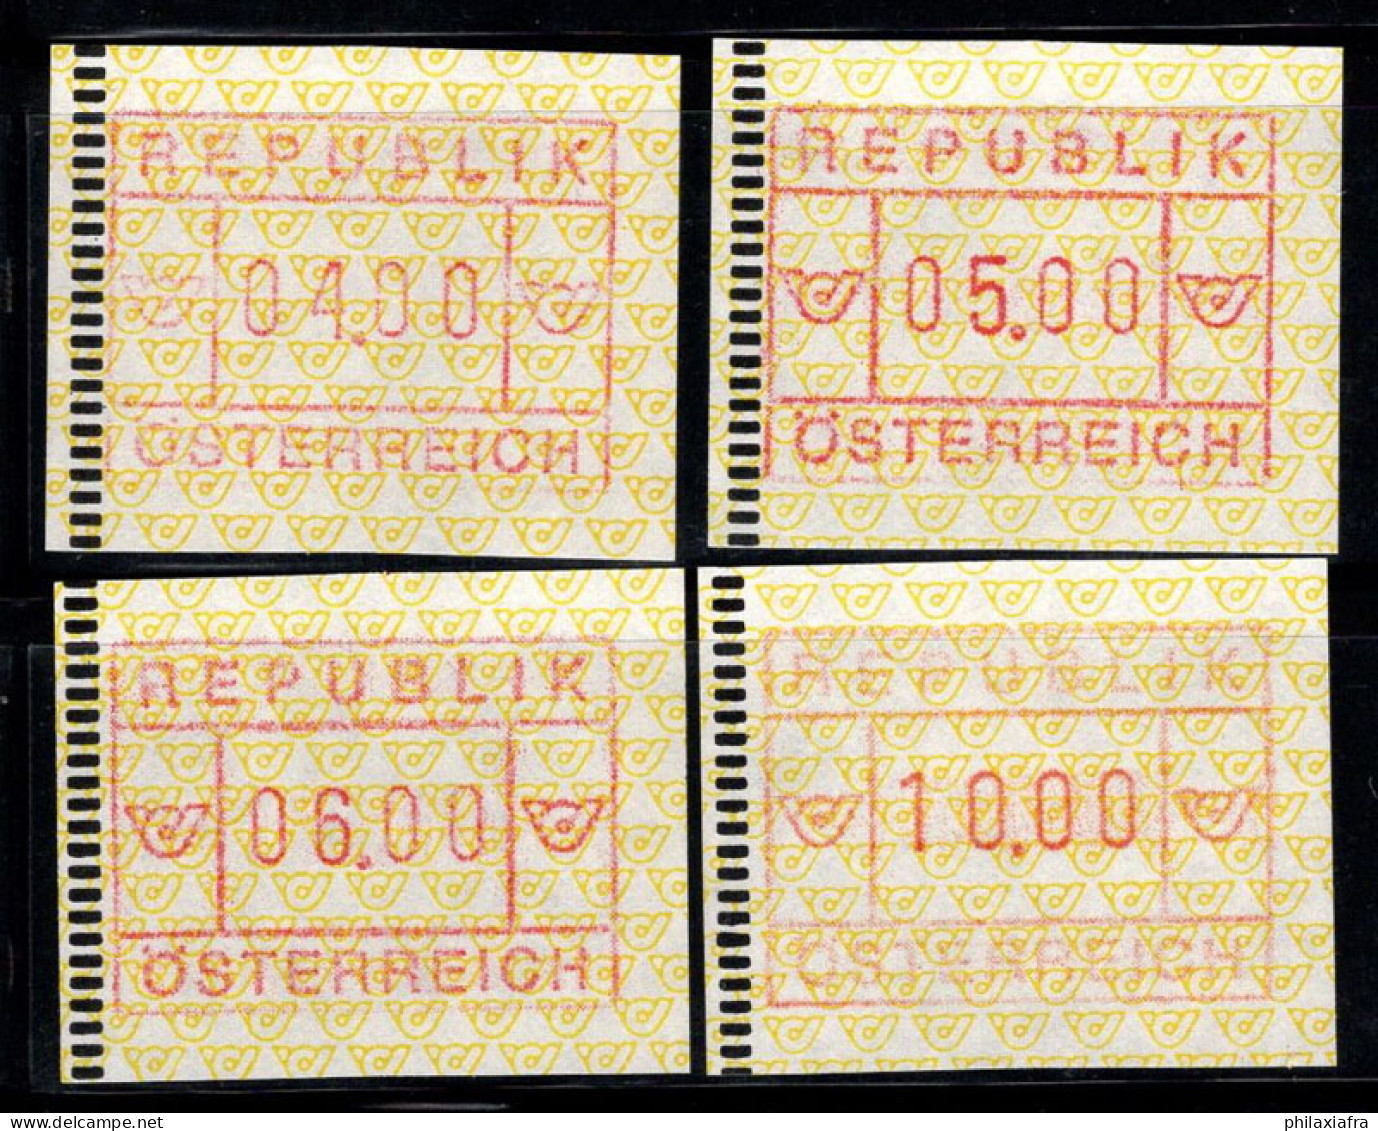 Autriche 1988 Mi. 2 Neuf ** 100% ATM 04, 05, 06, 10 - Machines à Affranchir (EMA)